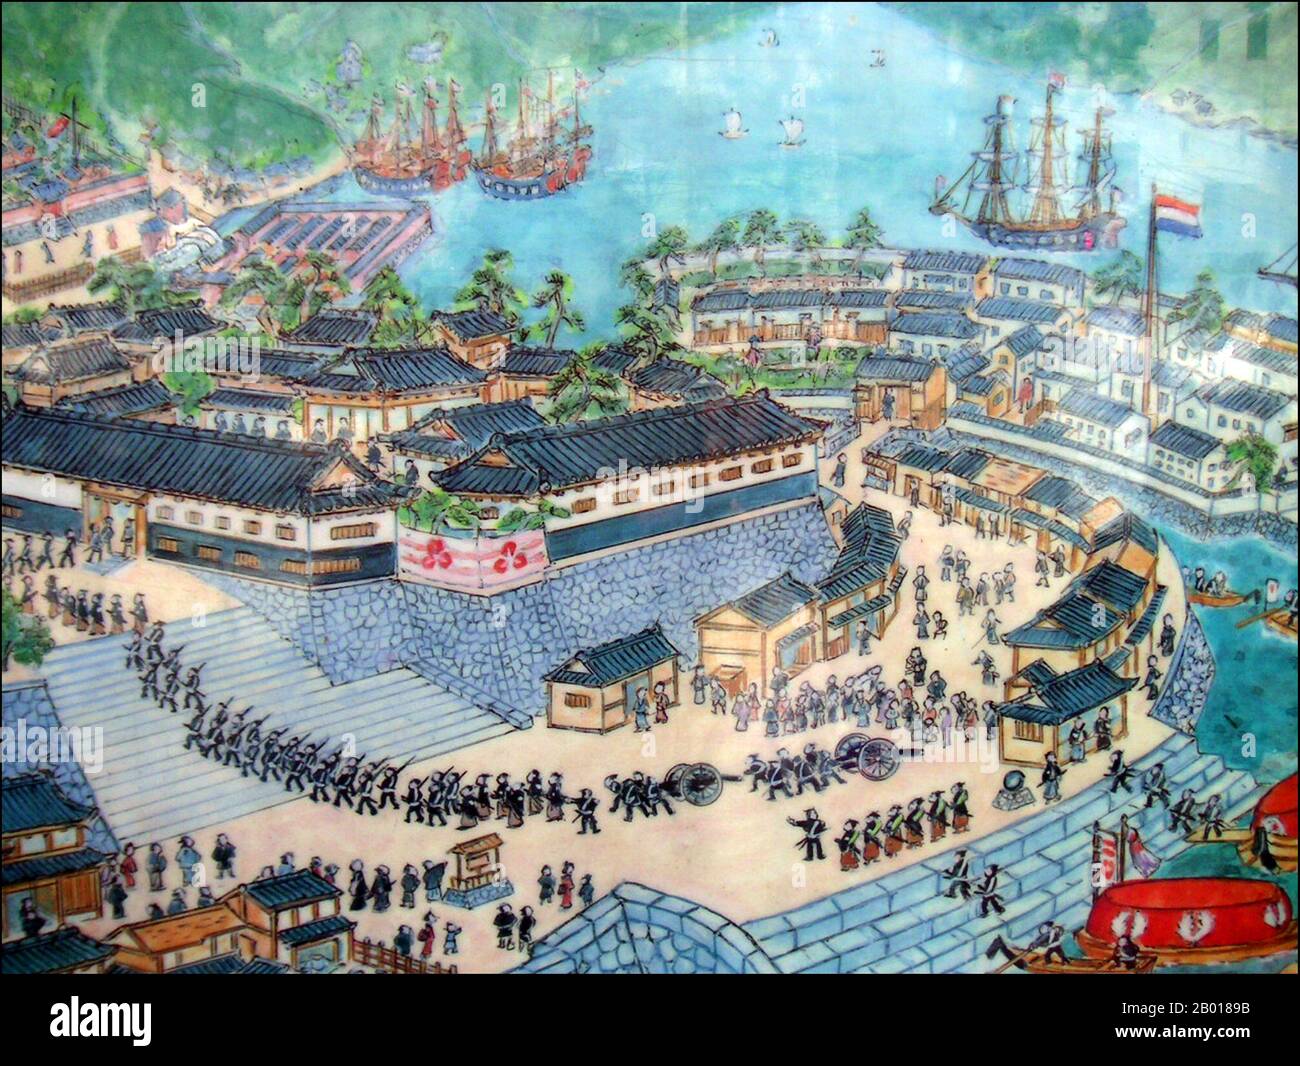 Japon: Le centre de formation de Nagasaki avec Dejima poste de commerce artificiel de l'île en arrière-plan - vol de drapeau hollandais. Peinture du début du 19th siècle. Dejima (littéralement « île de sortie »; néerlandais : Desjima ou Deshima, parfois latinisé comme Décima ou Dezima) était une petite île artificielle en forme de ventilateur construite dans la baie de Nagasaki en 1634. Cette île, qui a été formée en creusant un canal à travers une petite péninsule, est restée comme le seul lieu de commerce et d'échange direct entre le Japon et le monde extérieur pendant la période Edo. Dejima a été construit pour contraindre les commerçants étrangers dans le cadre de la politique de 'sakoku'. Banque D'Images